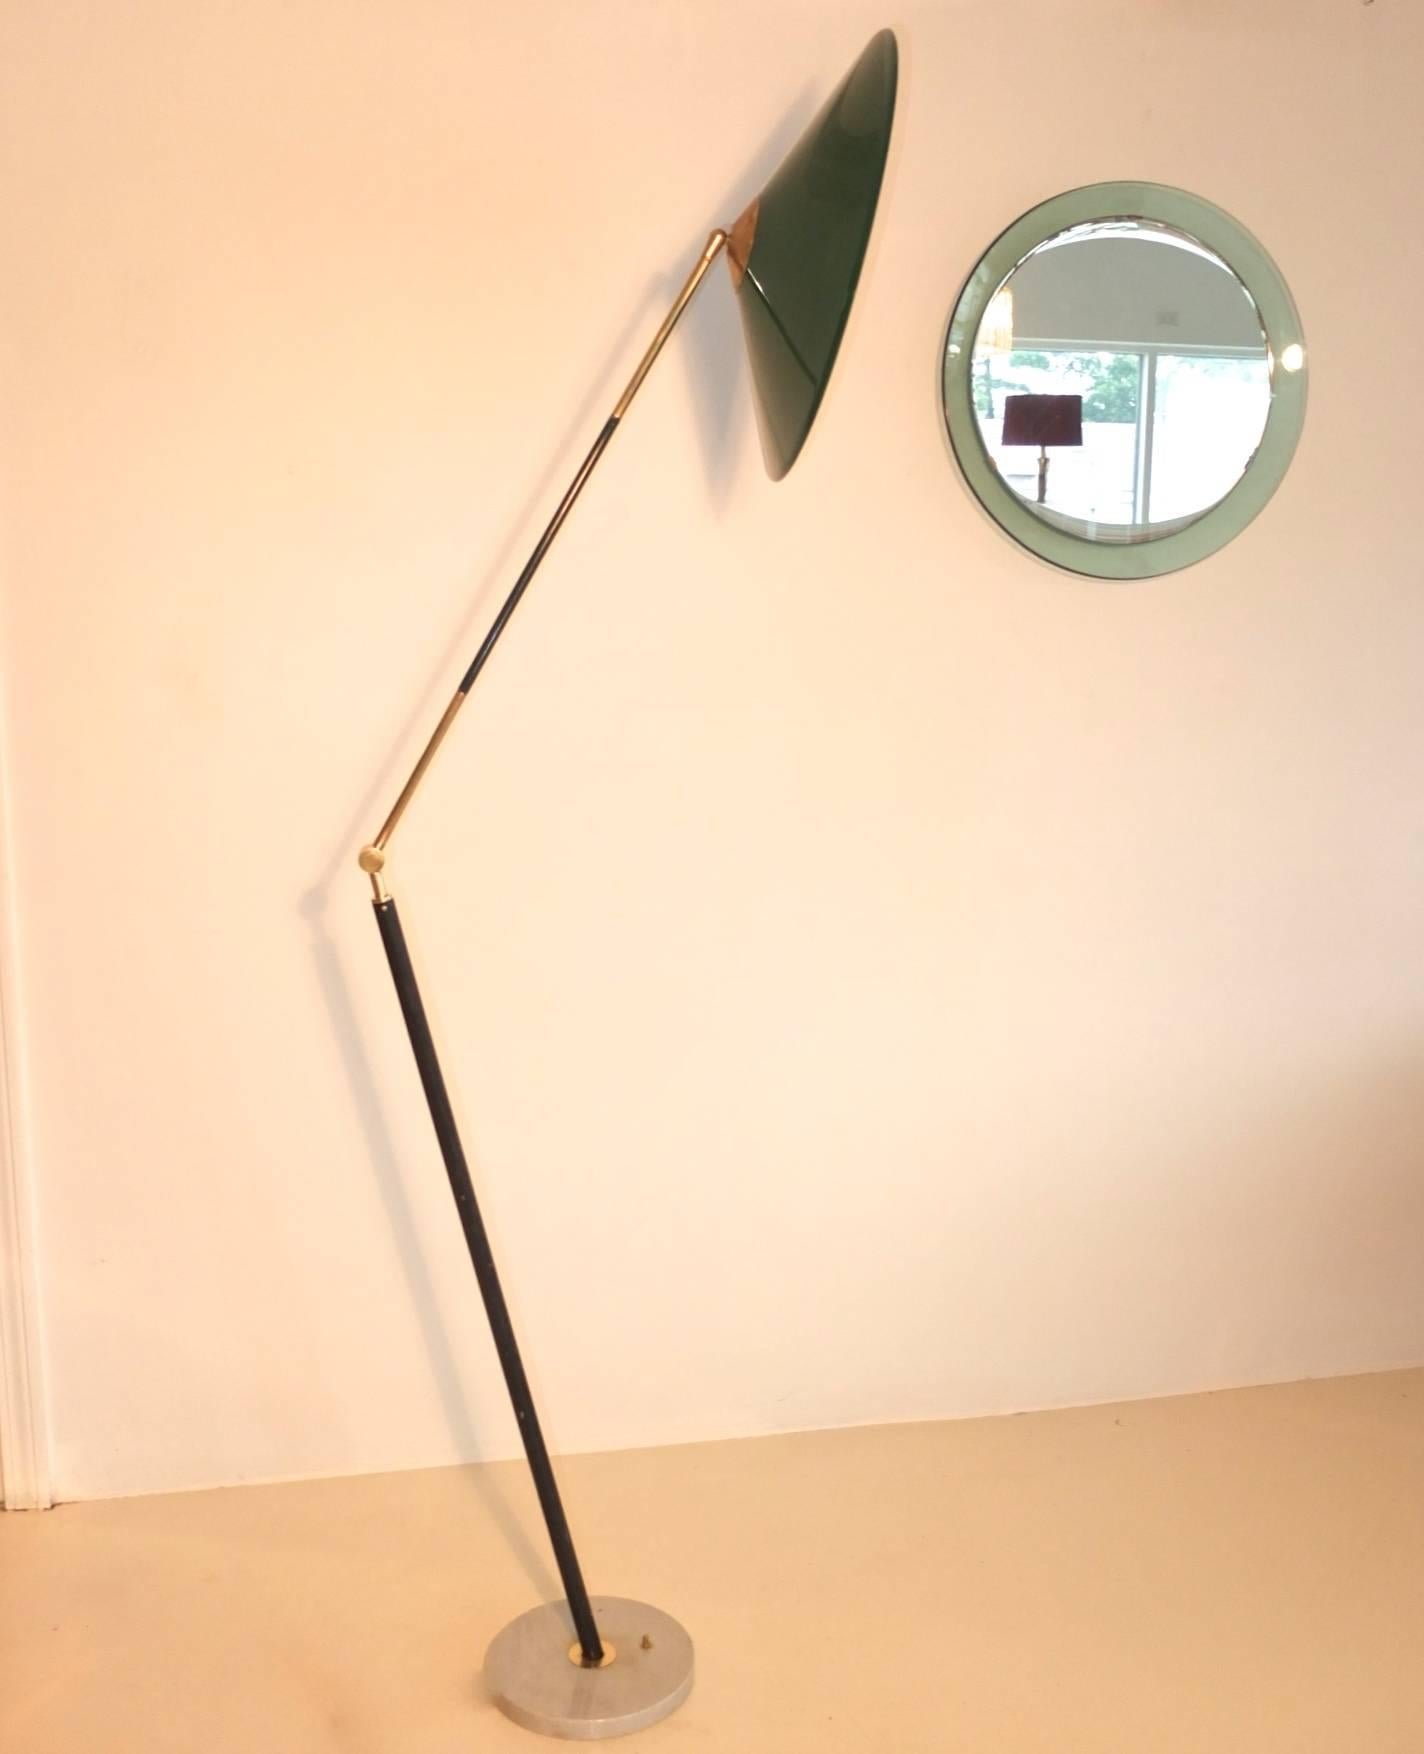 Stilux Milano Stehleuchte aus den 1950er Jahren mit markantem, schrägem Mast, langem Gelenkarm mit robustem, massivem Messing-Ellbogengelenk mit einem Radius von über 180 Grad, der kühne Posen ermöglicht. Langer oberer Messingarm mit Segmenten aus